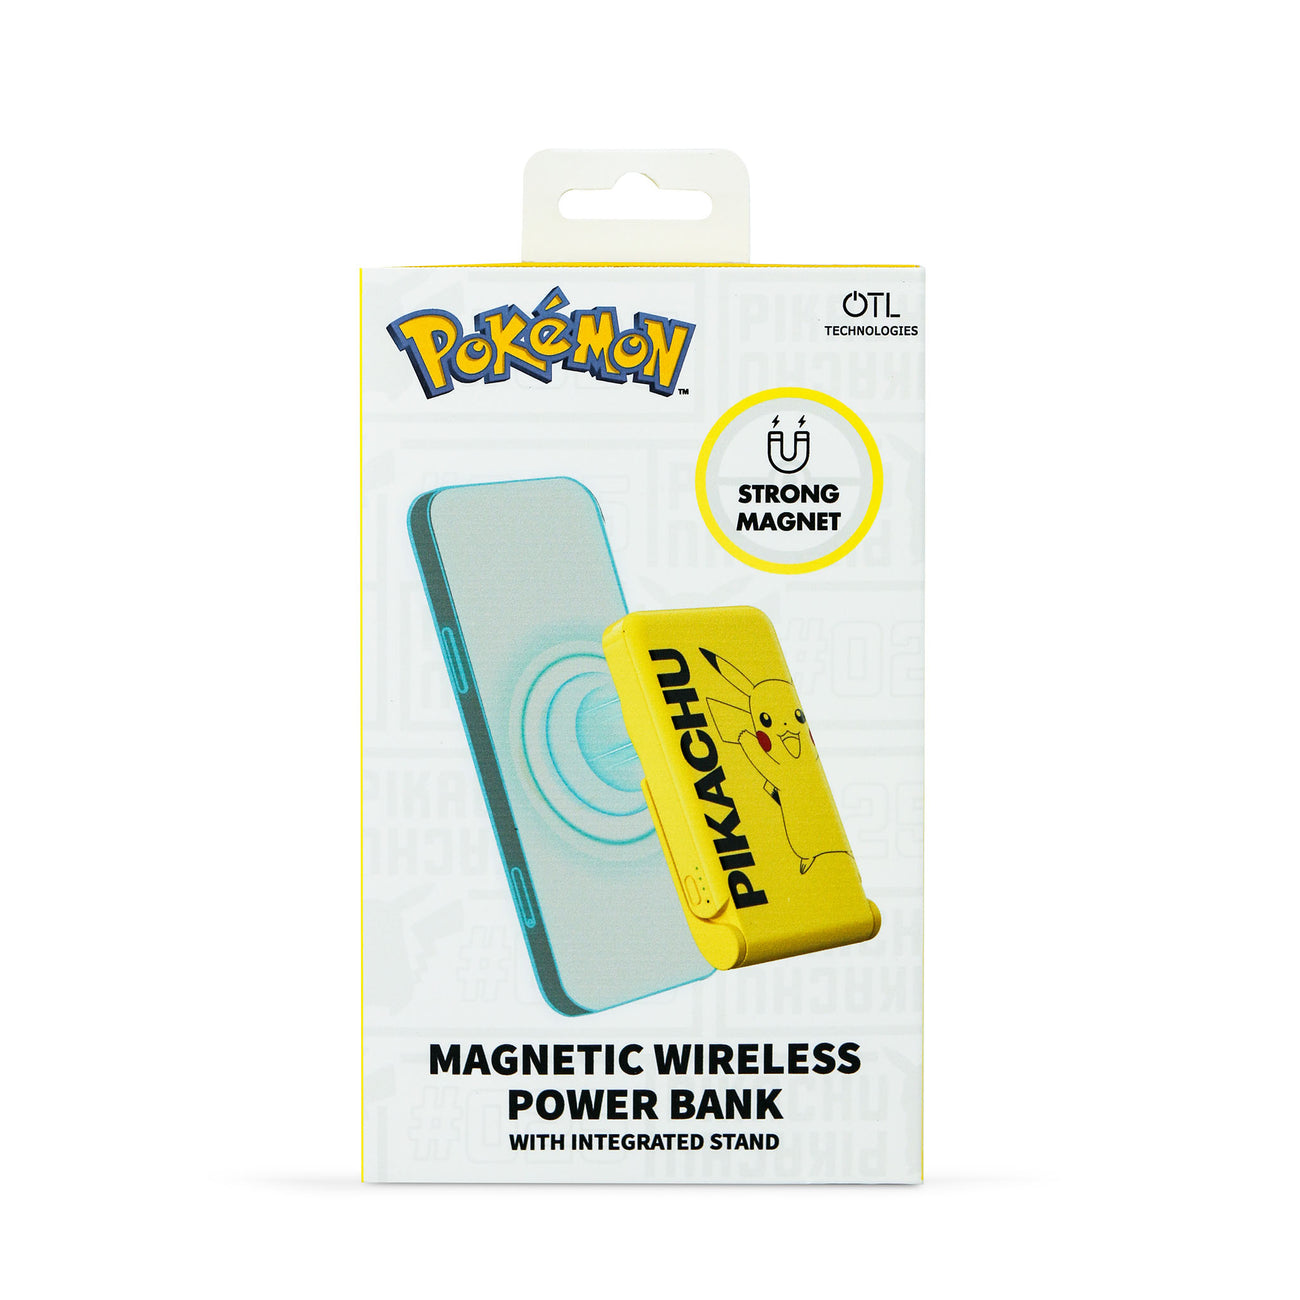 OTL mágneses powerbank -  Pokémon Pikachu